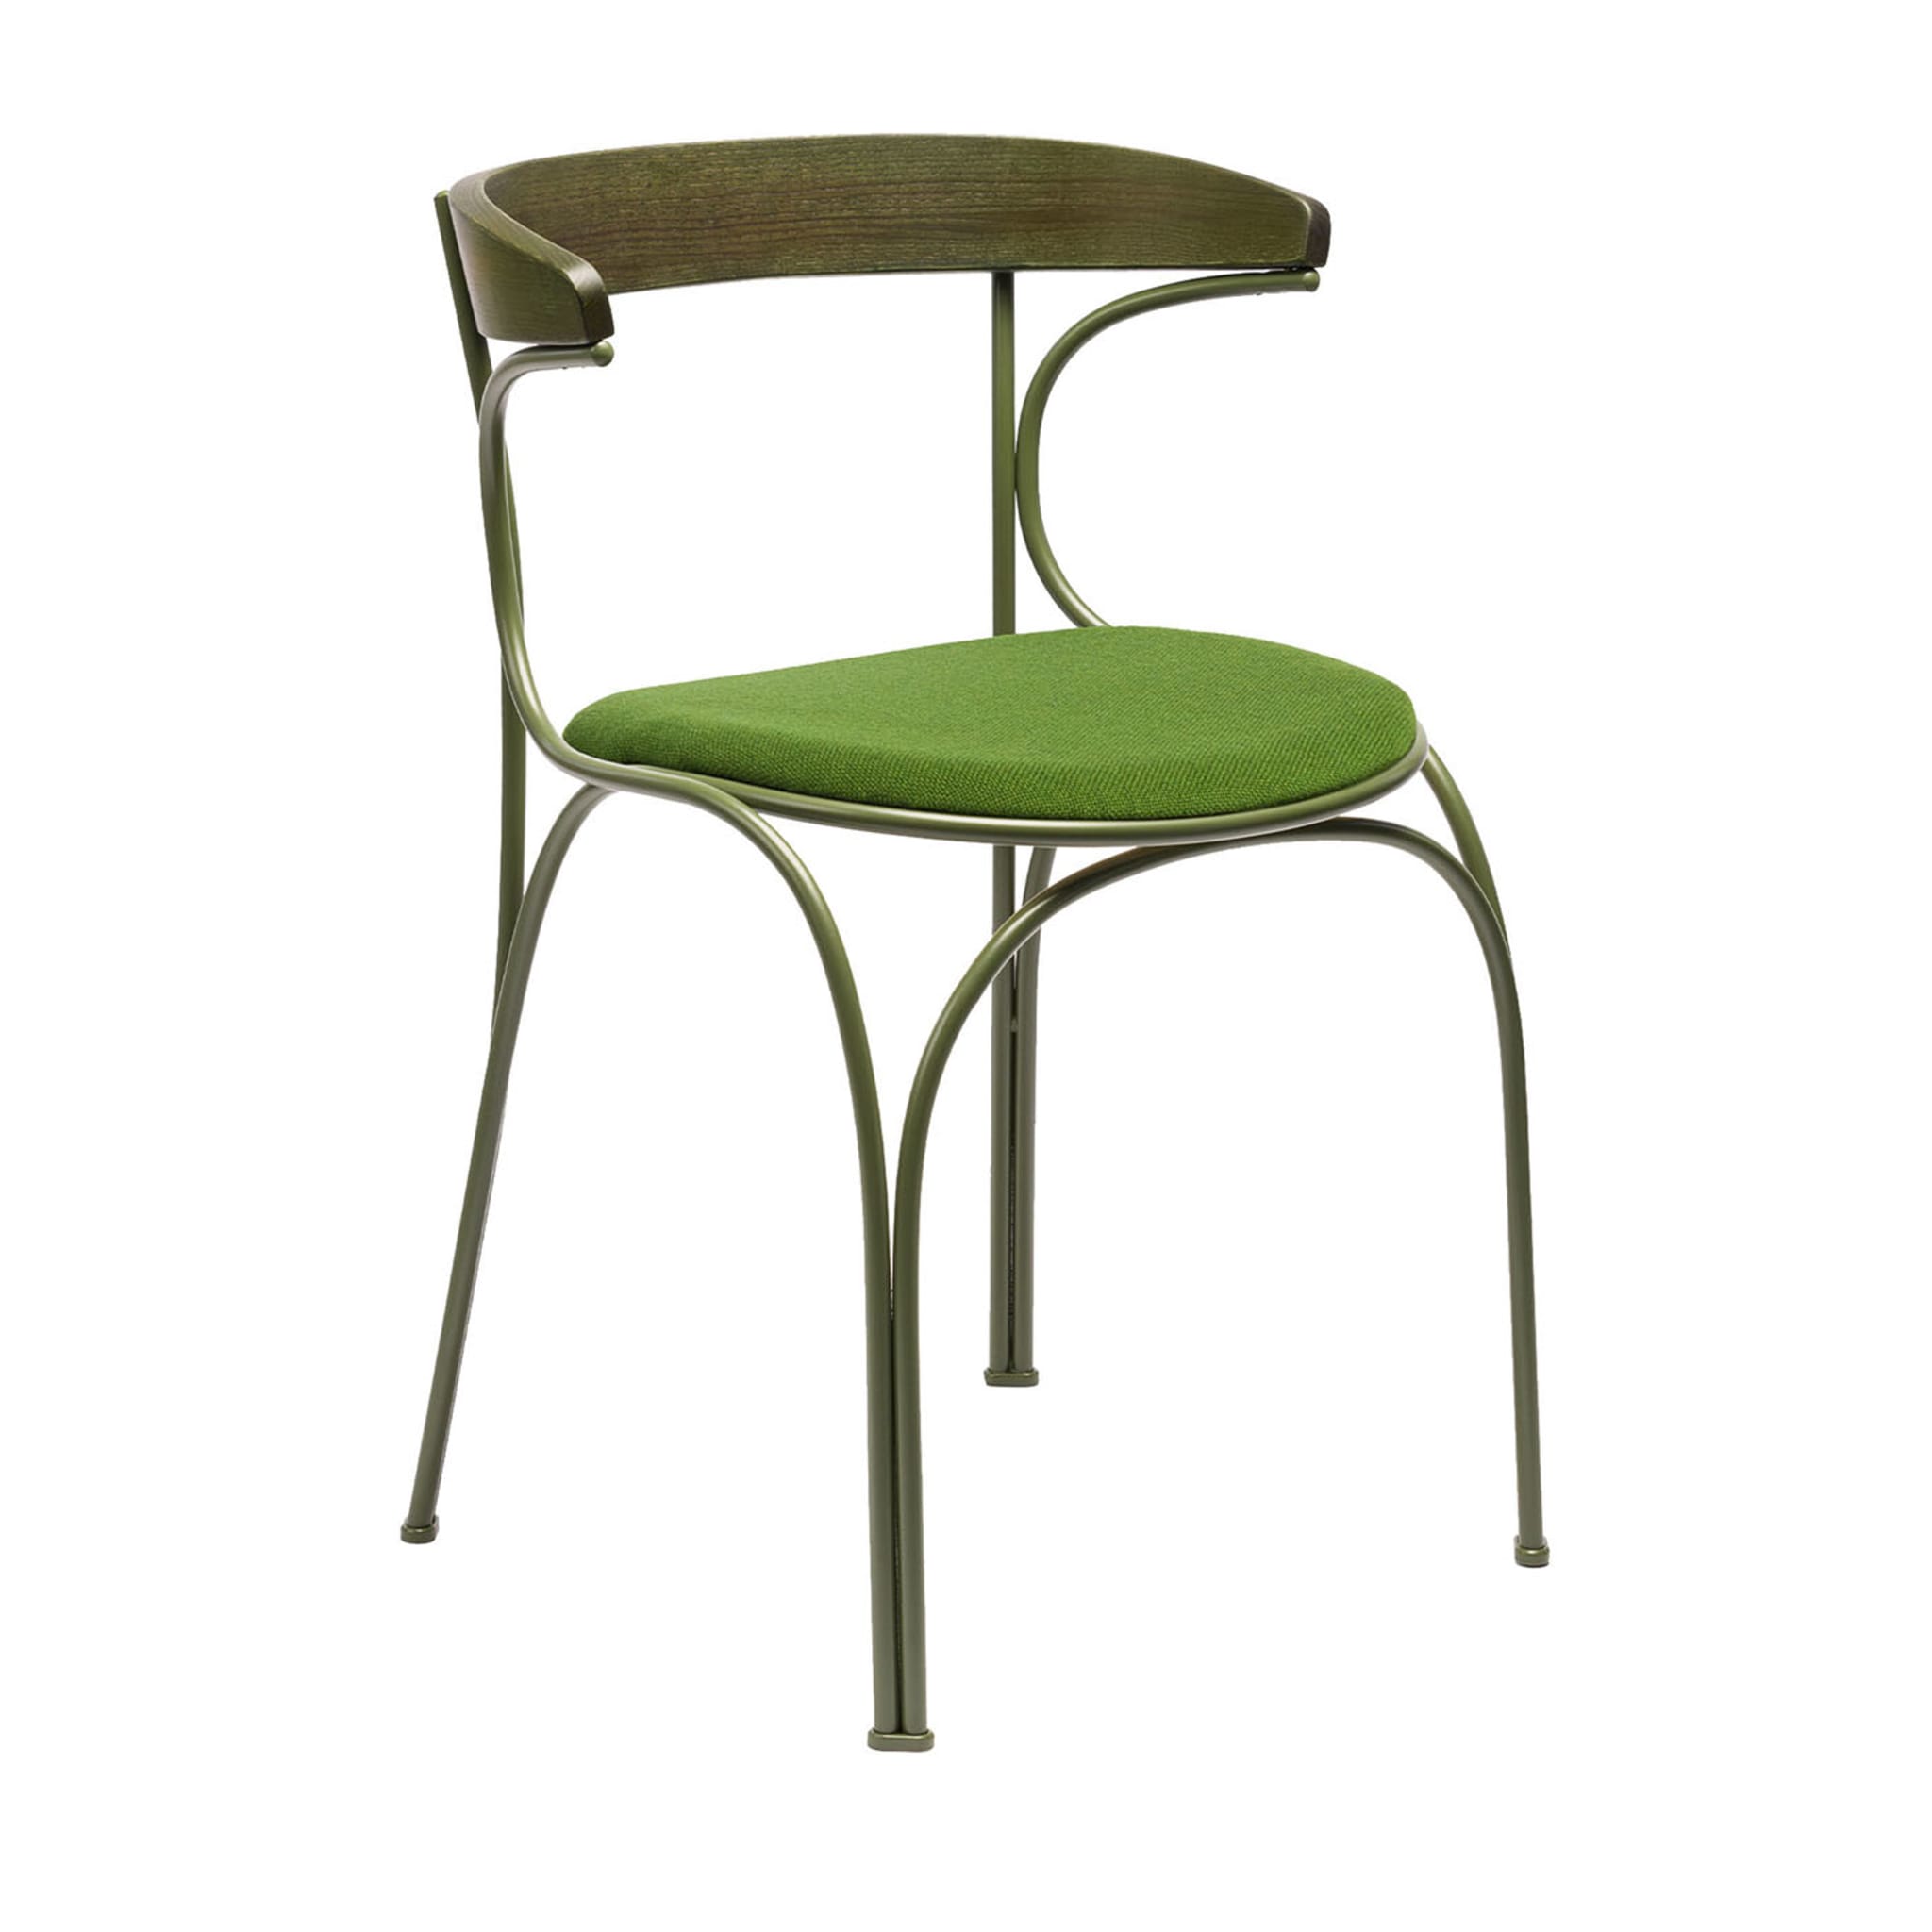 Ample Green Chair #2 di Nichetto Studio - Vista principale